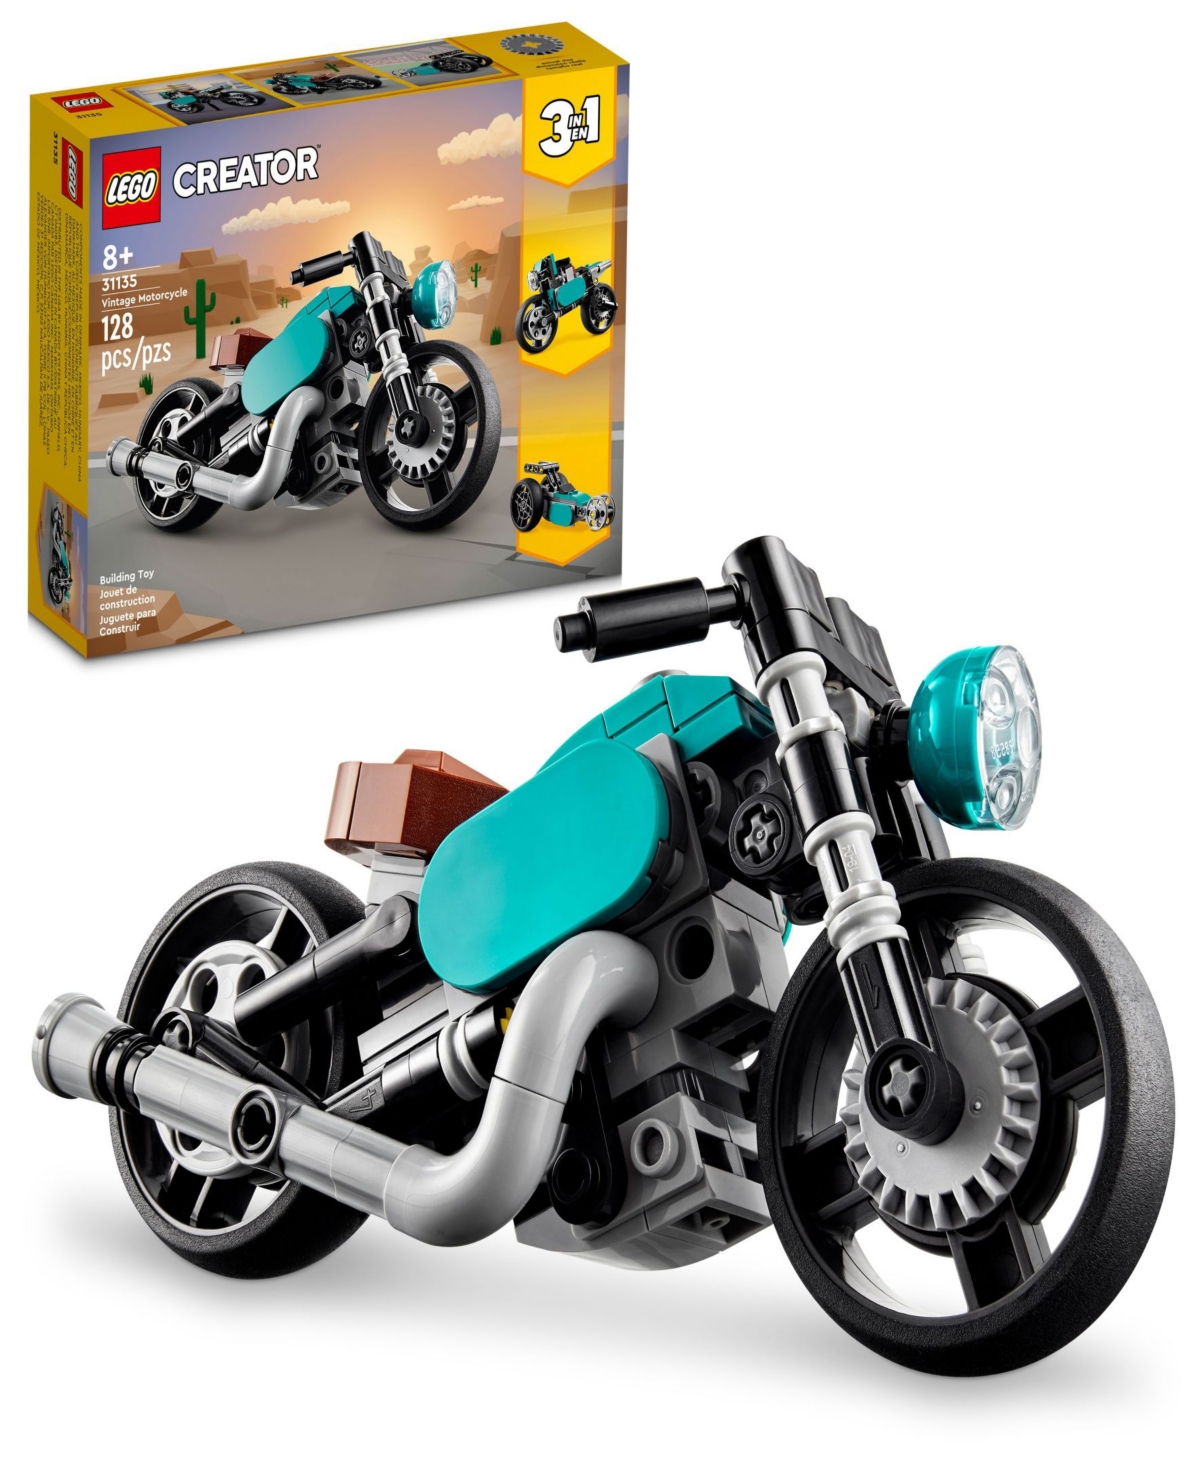 Lego Creator 31135 3-in-1 Vintage Motorcycle Toy Moto Building Set In Multicolor